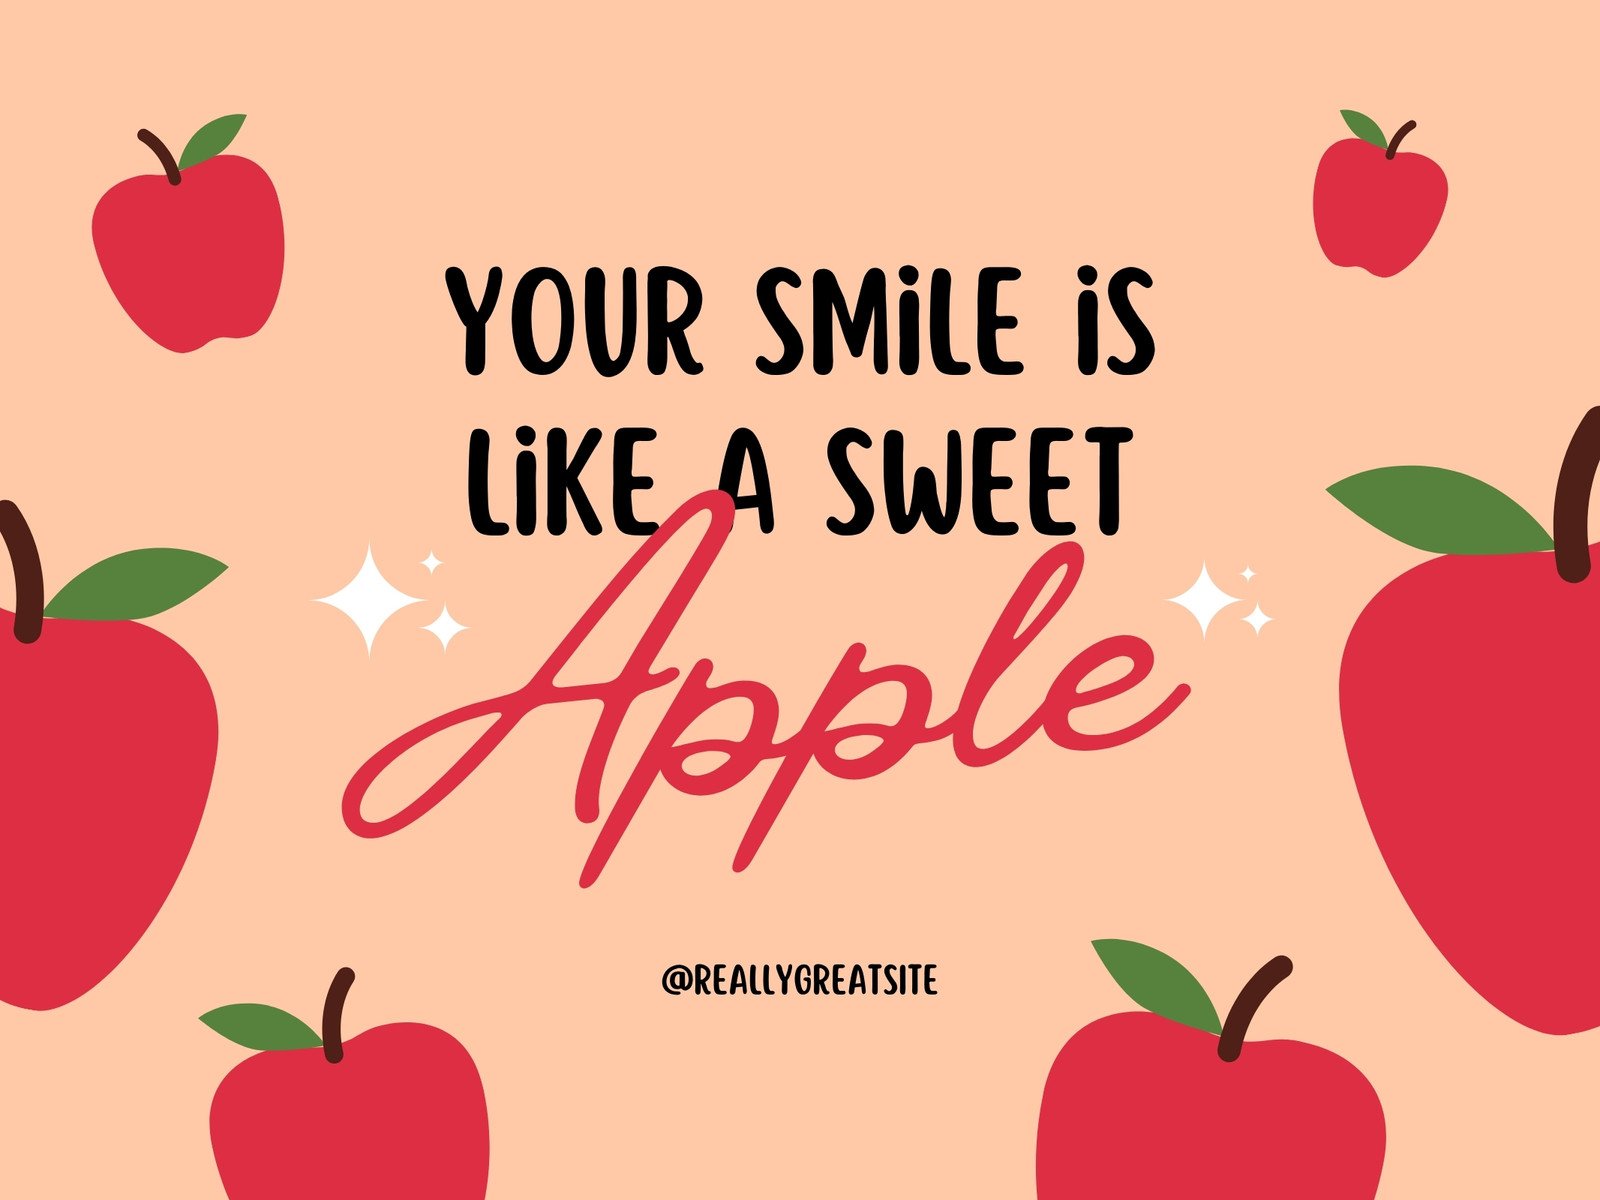 apple fruit template